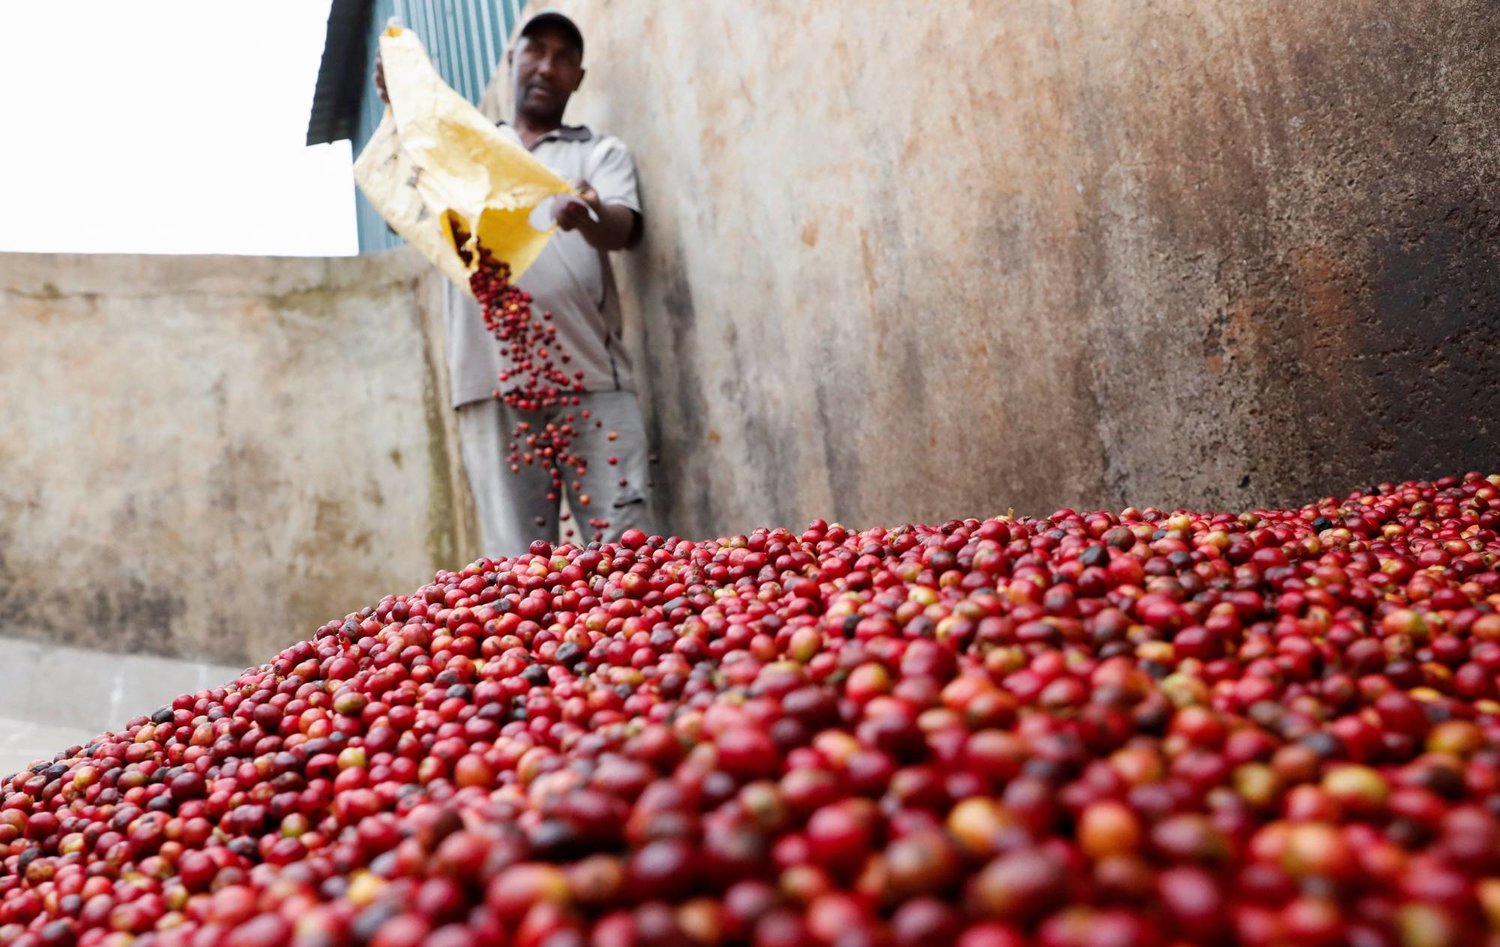 مُزارع قهوة يُفرّغ حبوب القهوة من مزرعته في مصنع بمقاطعة نييري الكينية (رويترز)